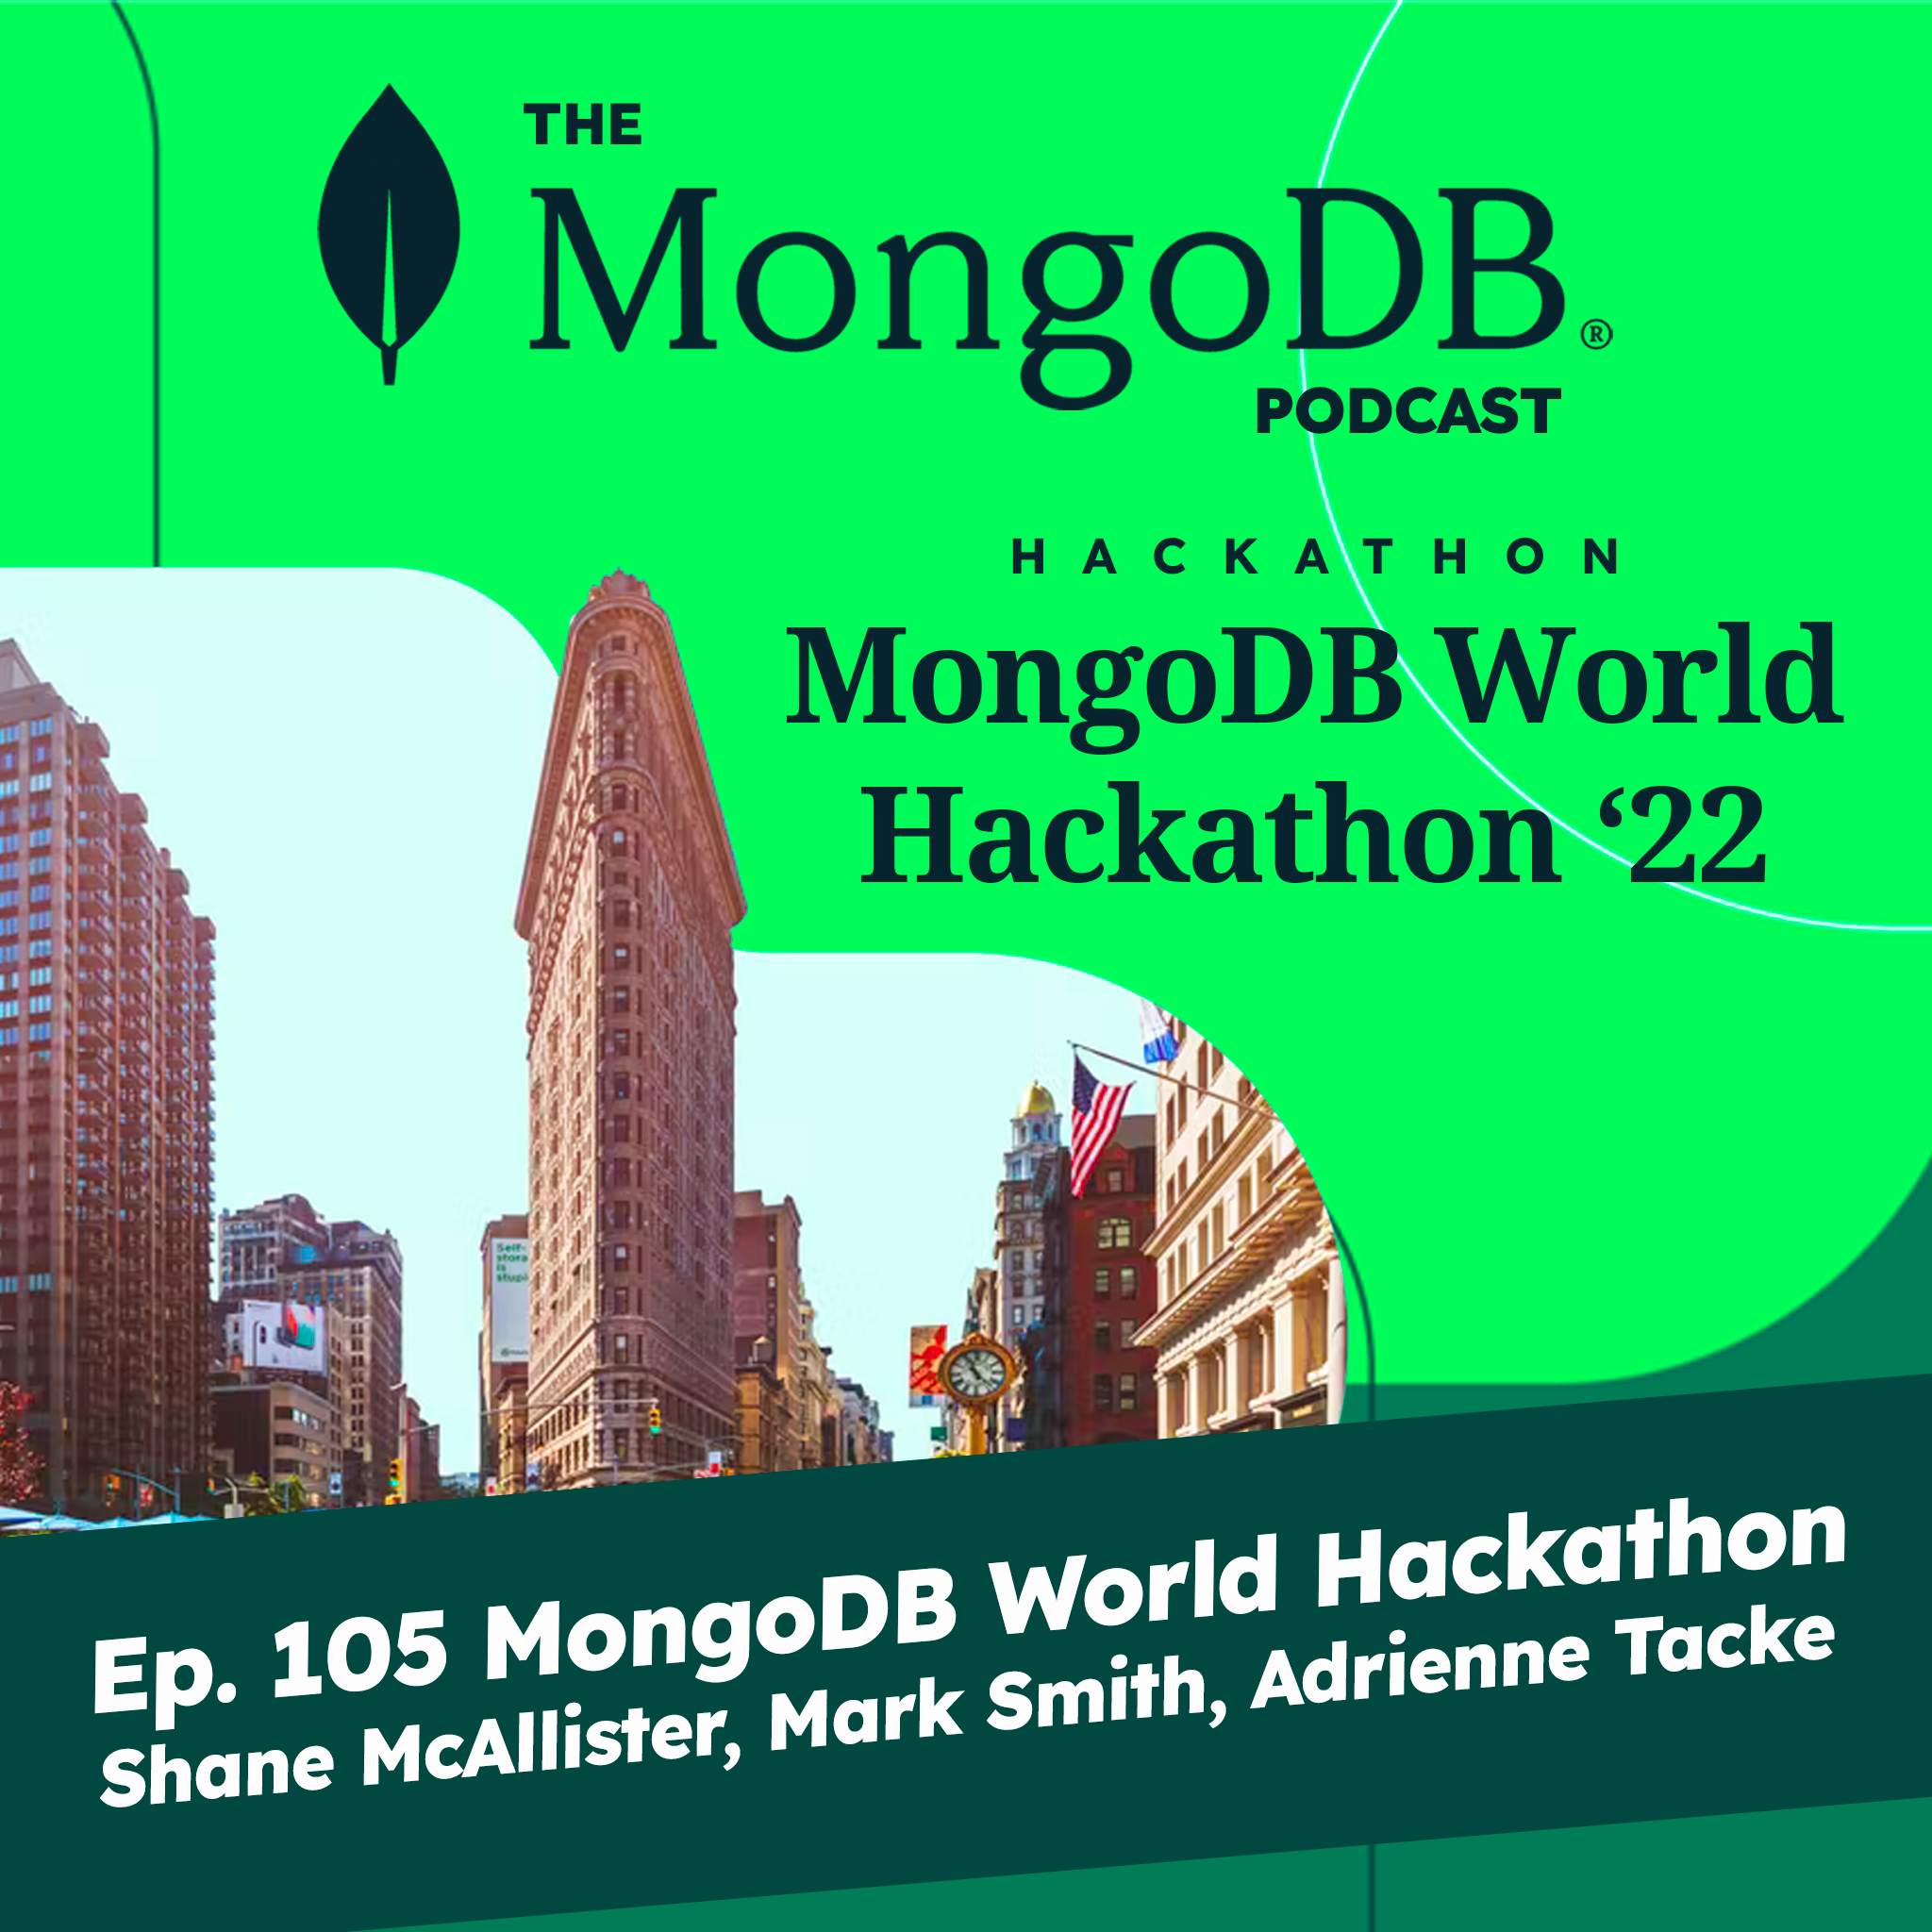 Ep. 105 The MongoDB World 2022 Hackathon